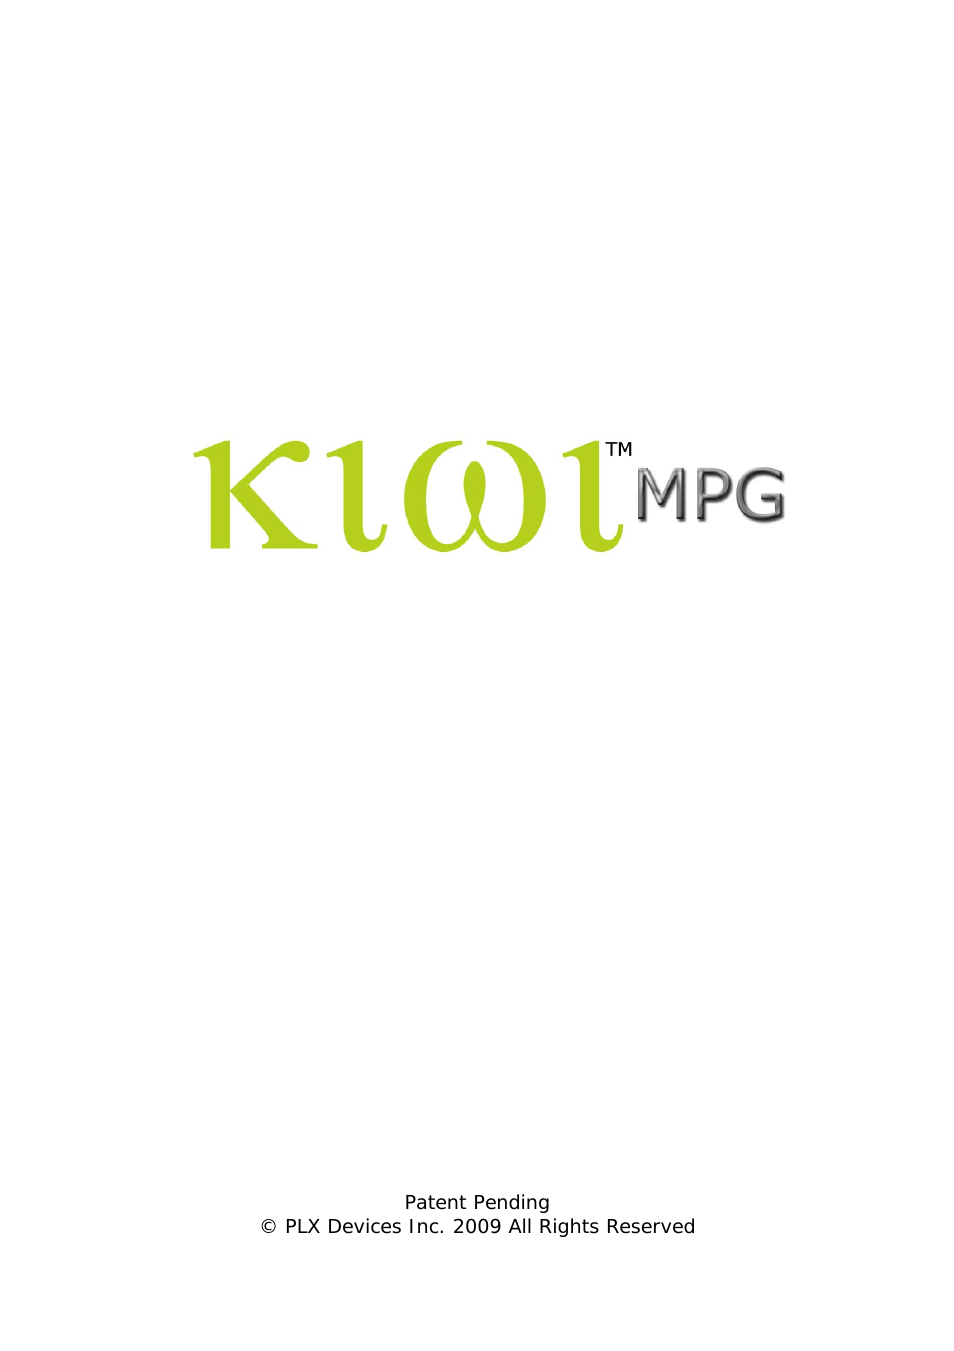 Kiwi MPG